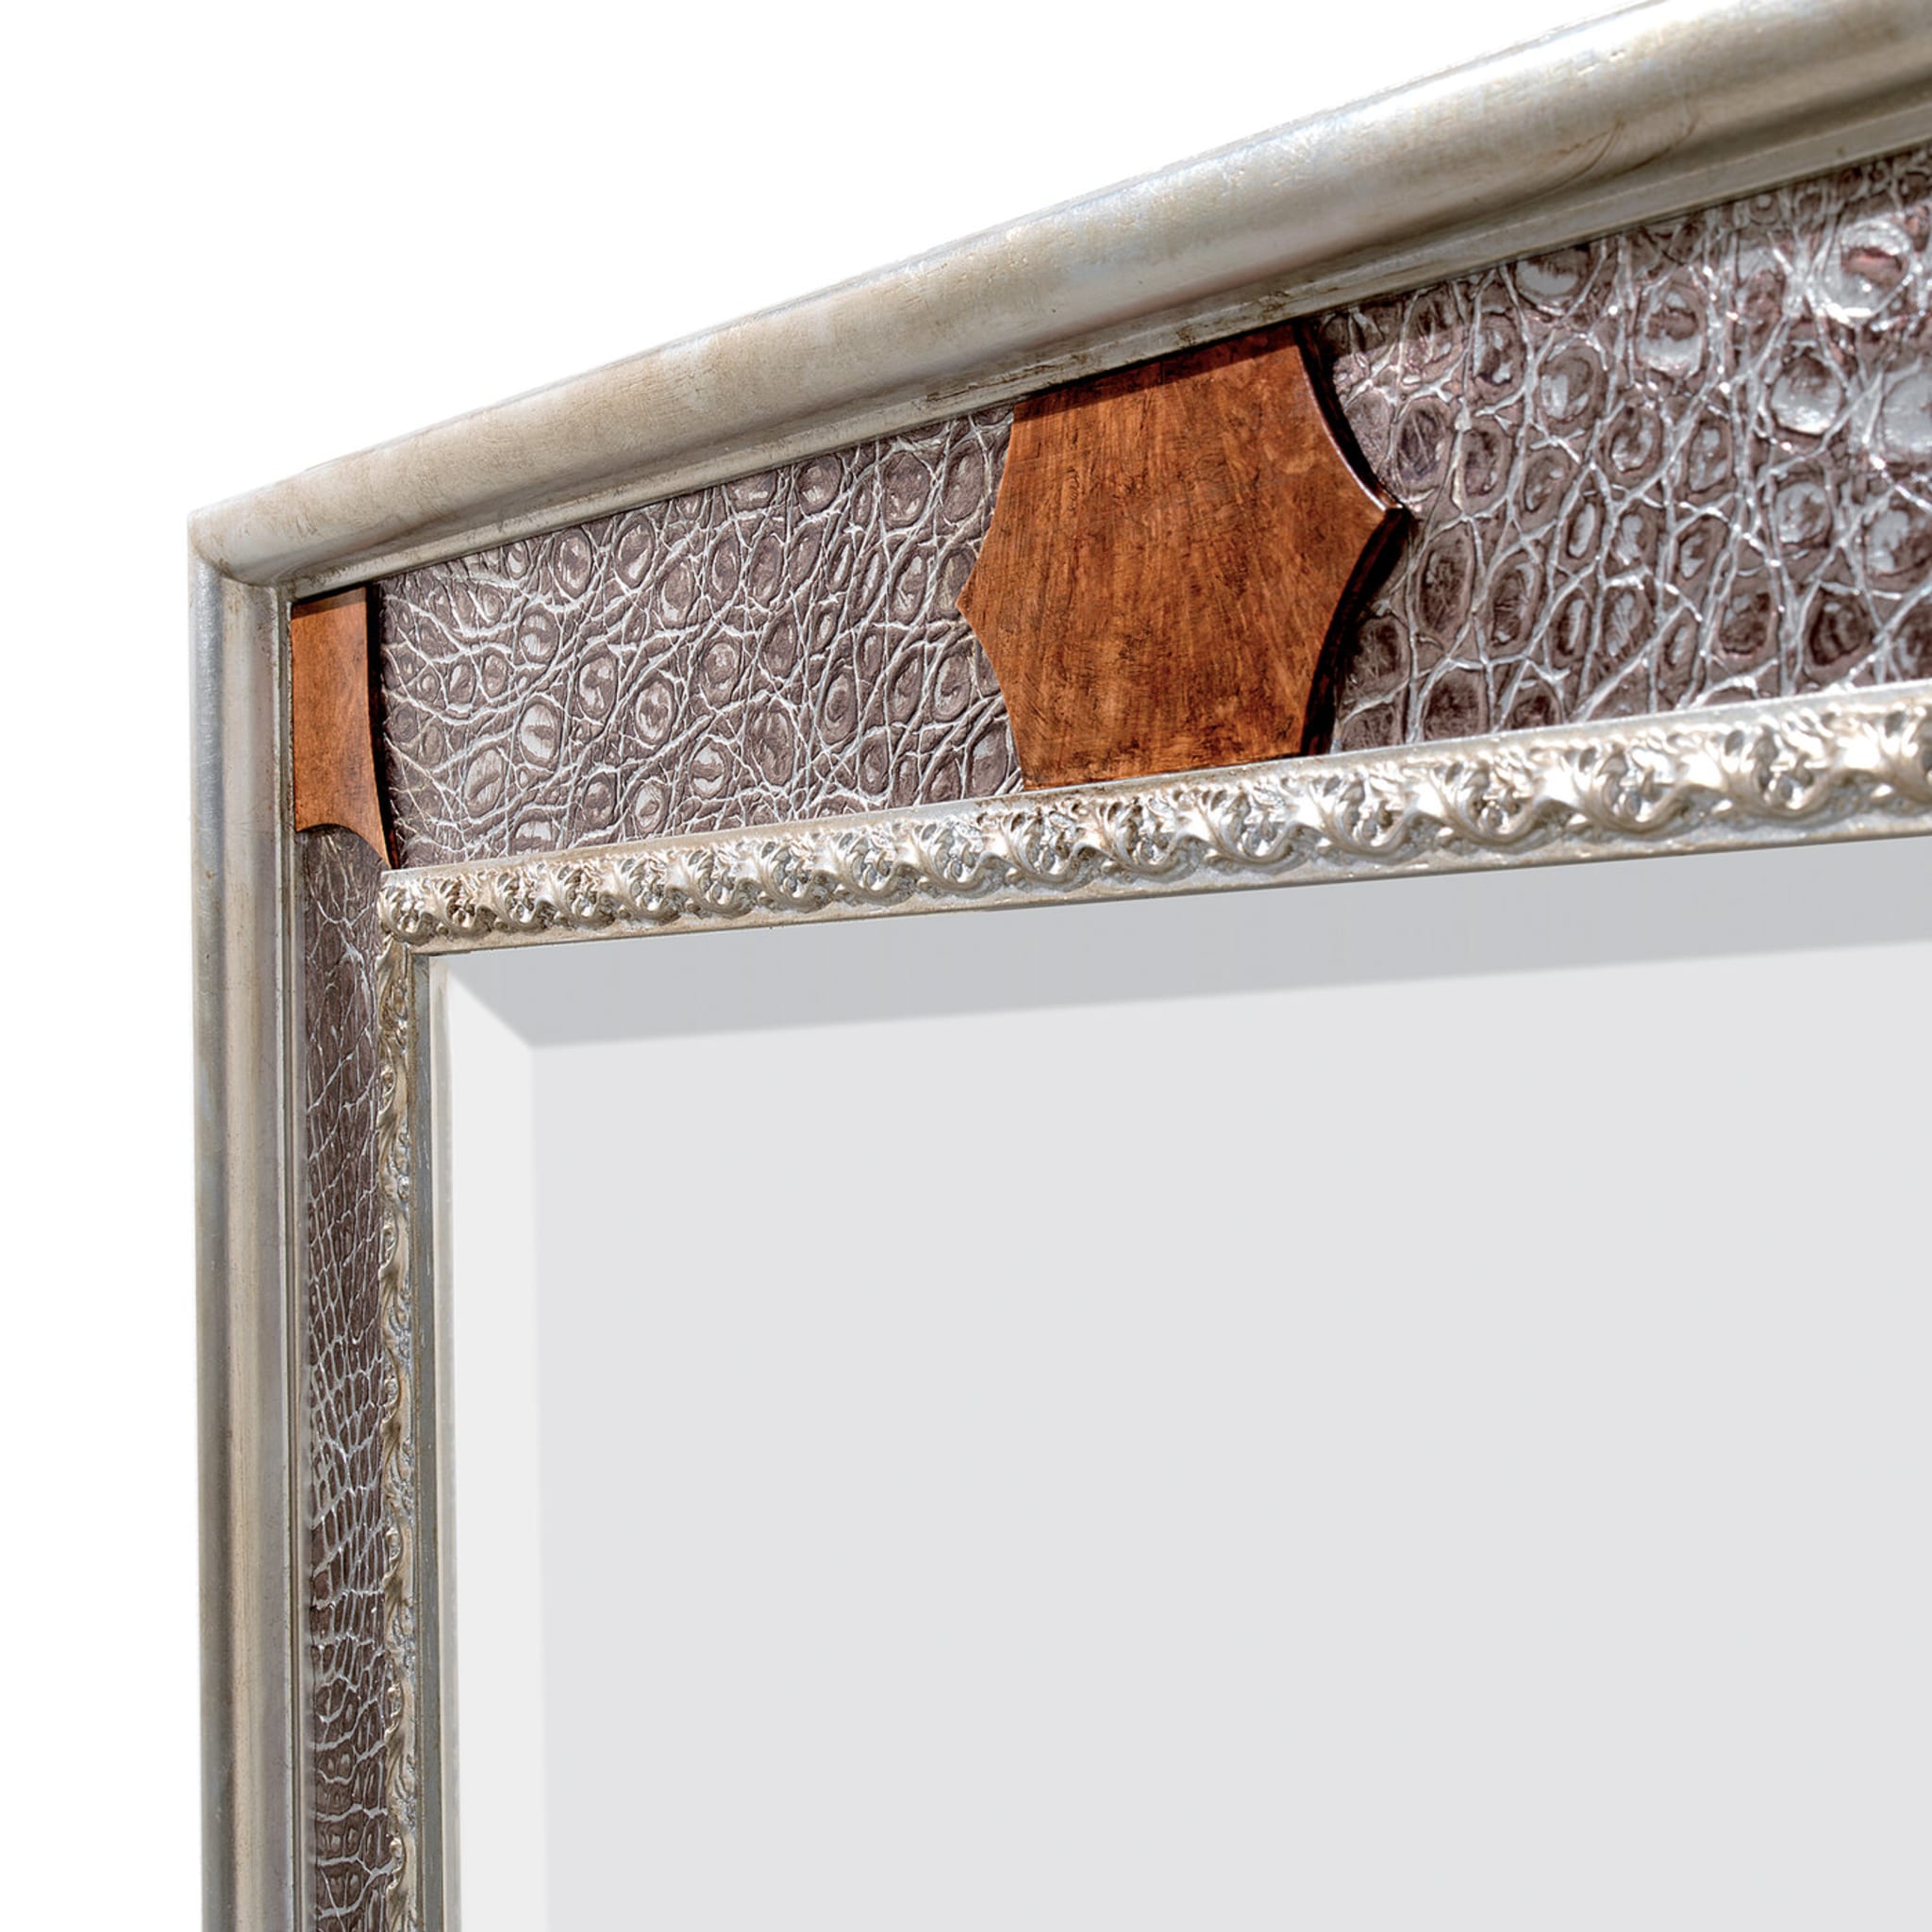 Crocodile Wall Mirror with Silver Leaf - Alternative view 1